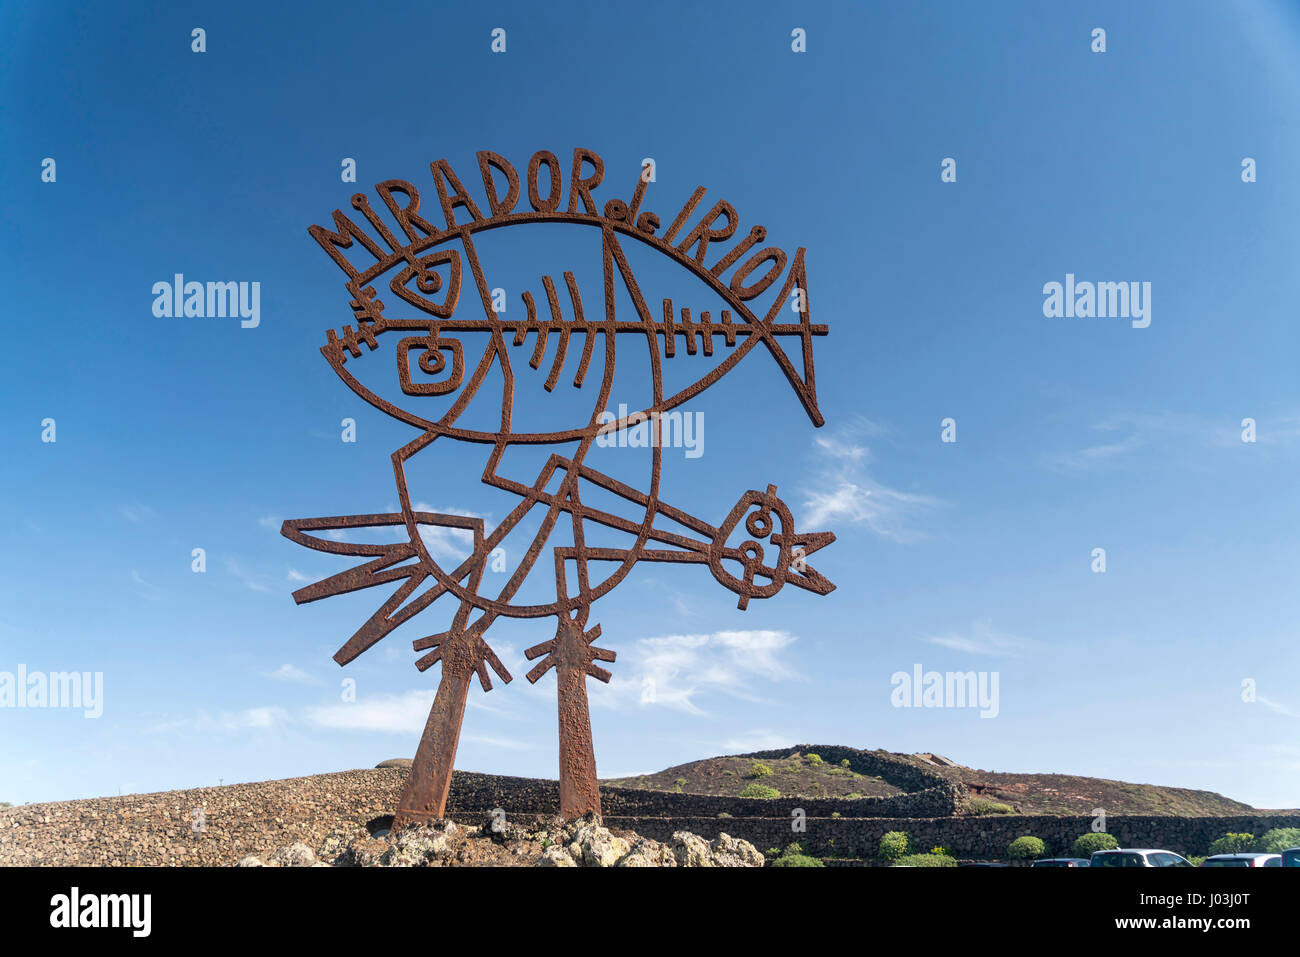 Segno Mirador Del Rio, scultura dall architetto Cesar Manrique, landmark, Lanzarote, Isole Canarie, Spagna Foto Stock